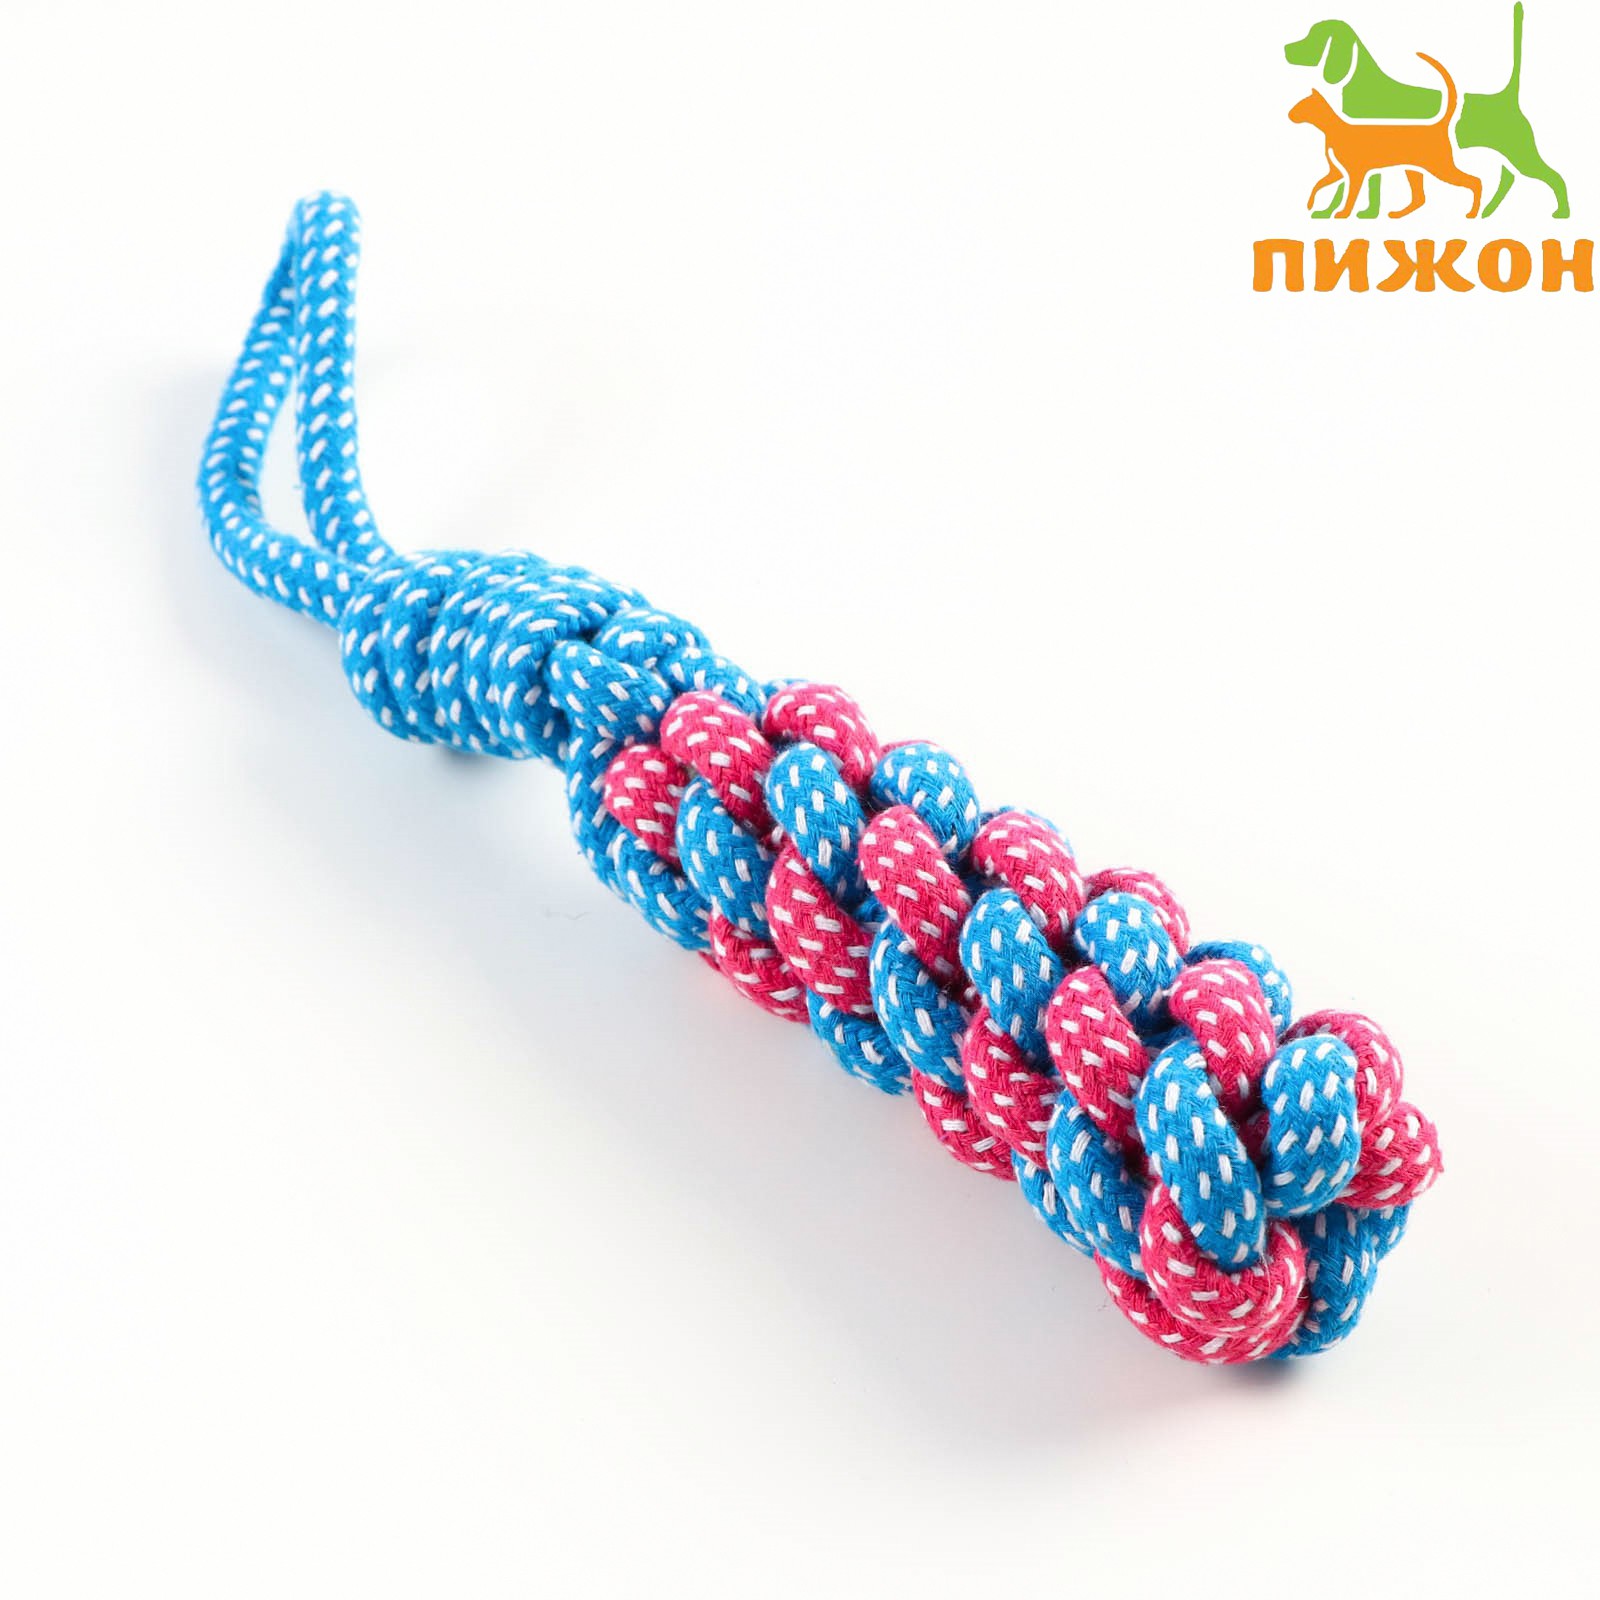 Игрушка Пижон канатная плетеная с ручкой 120 г до 31 см синяя/розовая - фото 1